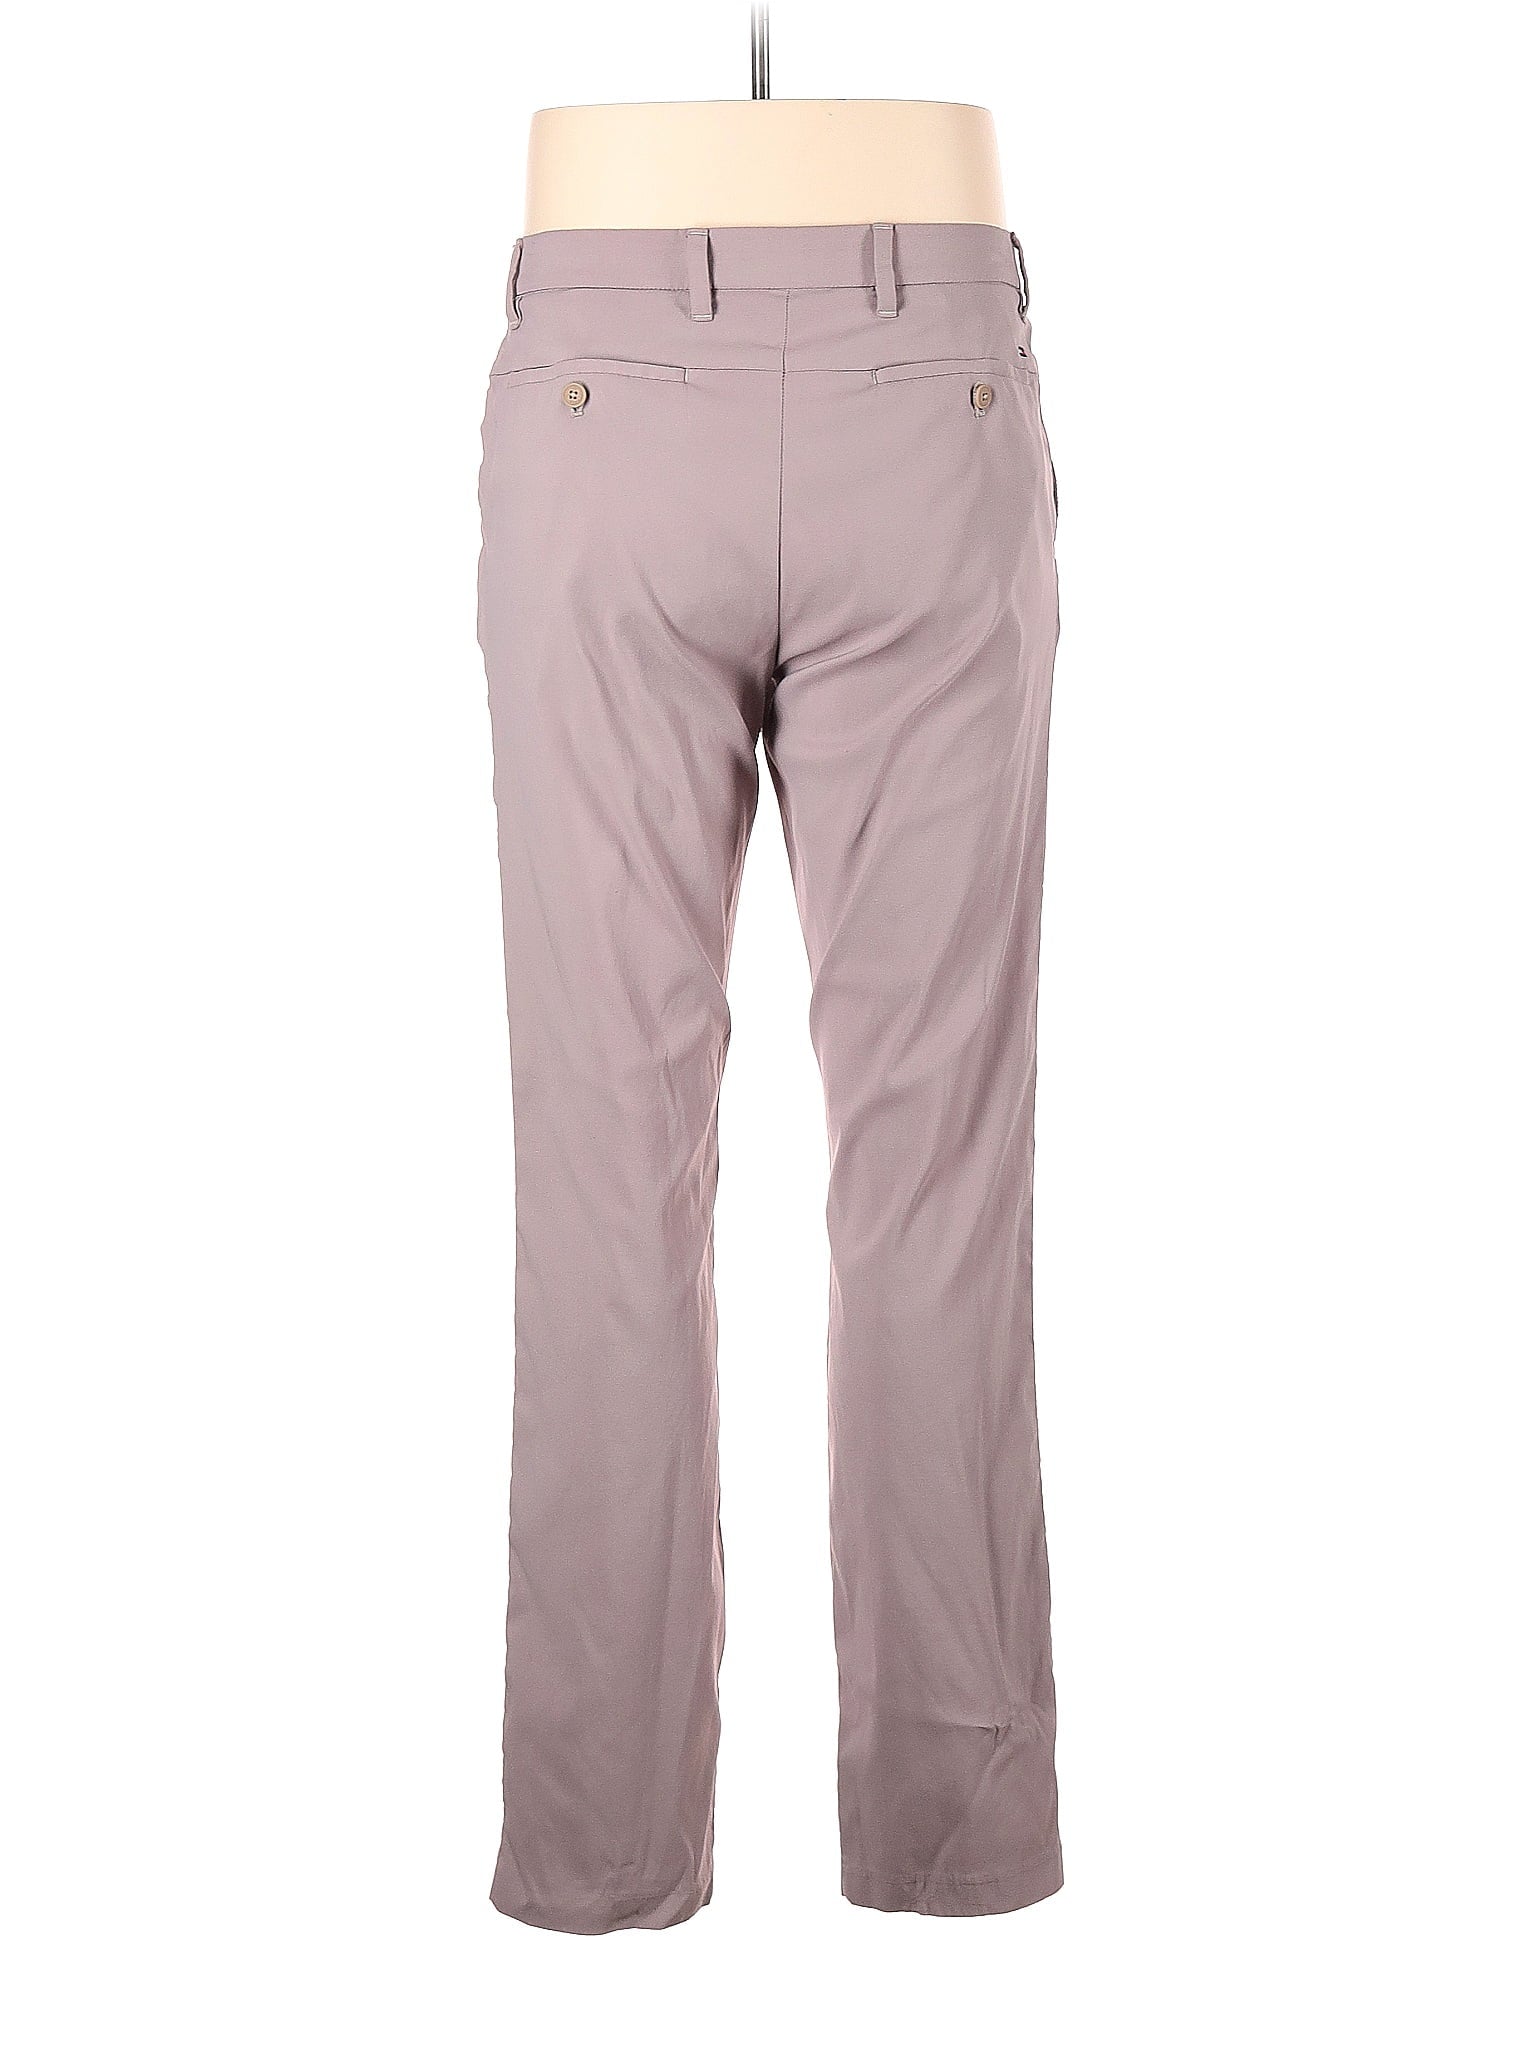 Dress Pants size - 33 (W33 L34)